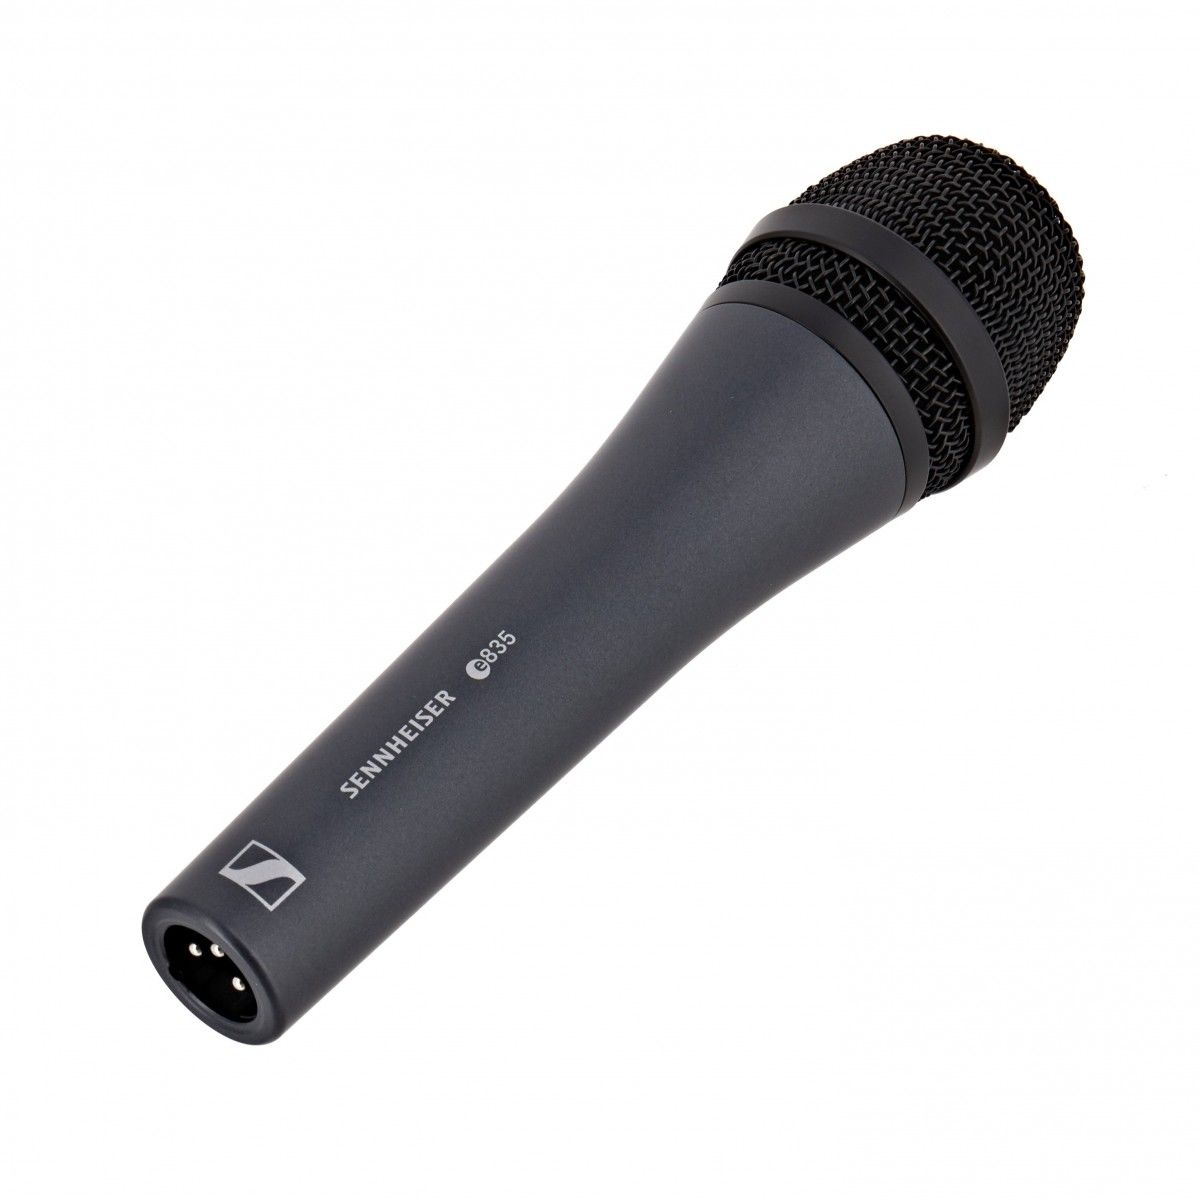 Микрофон SENNHEISER E 835